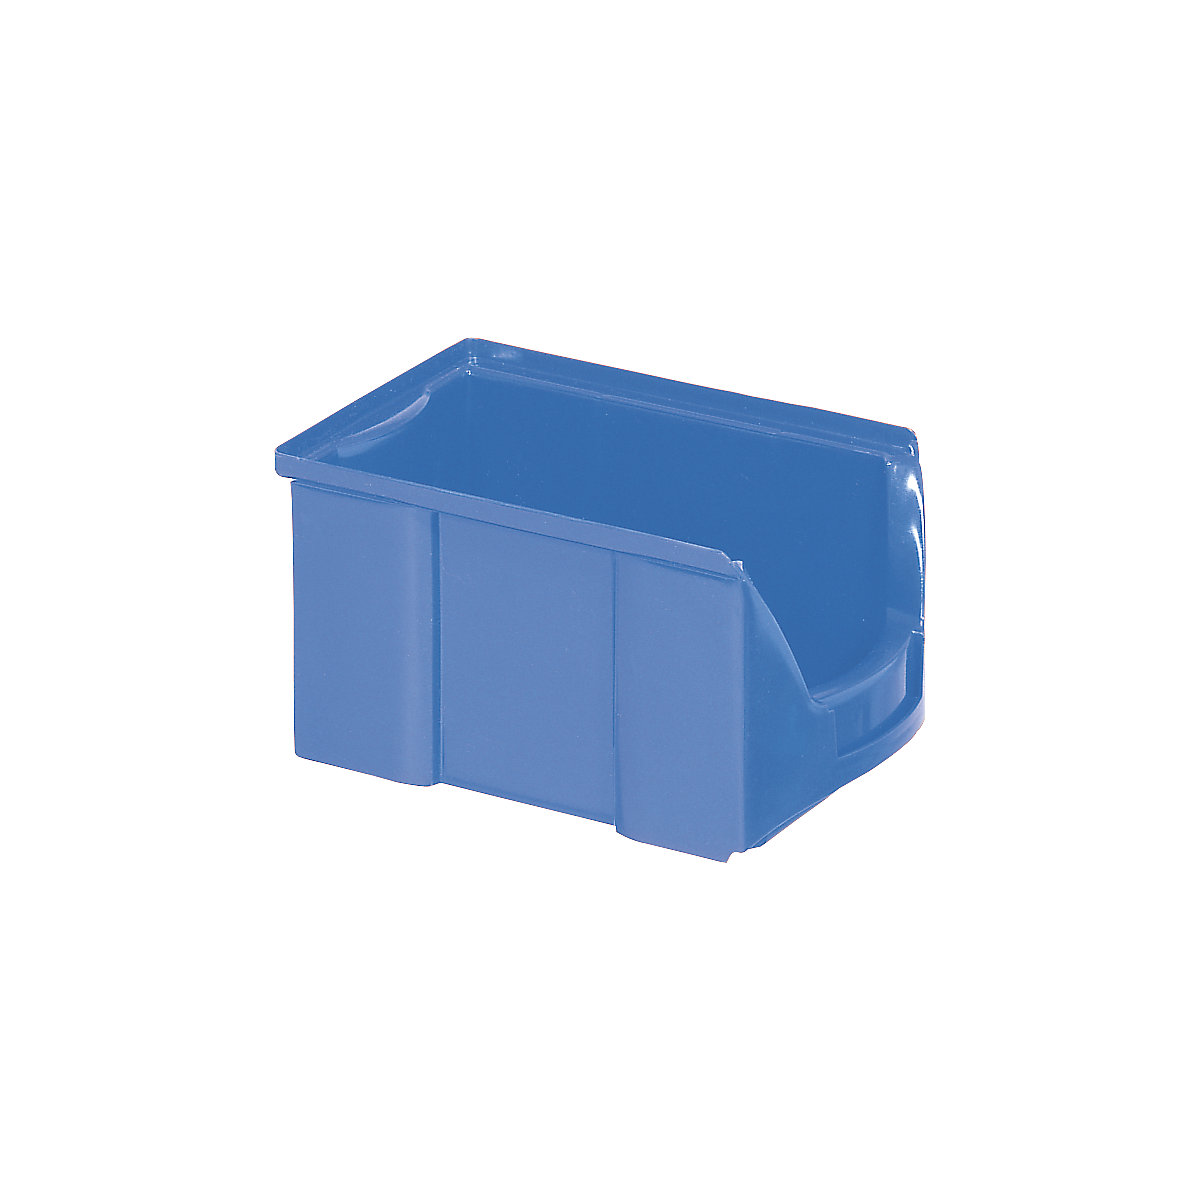 FUTURA-Sichtlagerkasten aus Polyethylen, LxBxH 229 x 148 x 122 mm, VE 25 Stk, blau-17